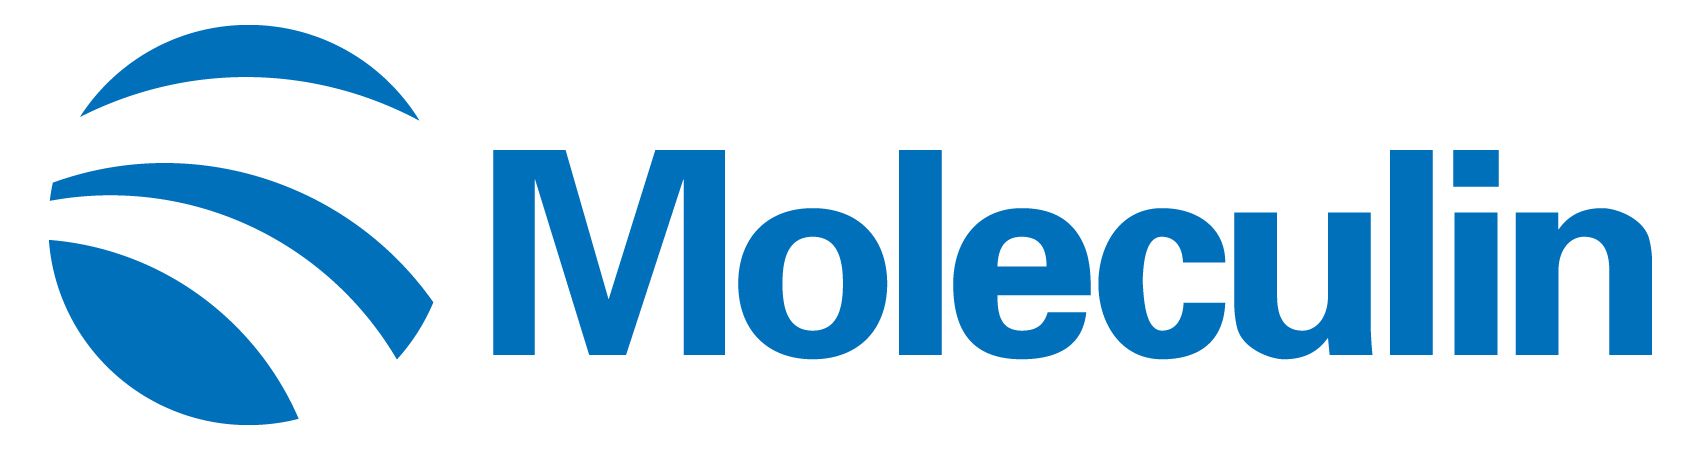 moleculin-logo_horiza35.jpg